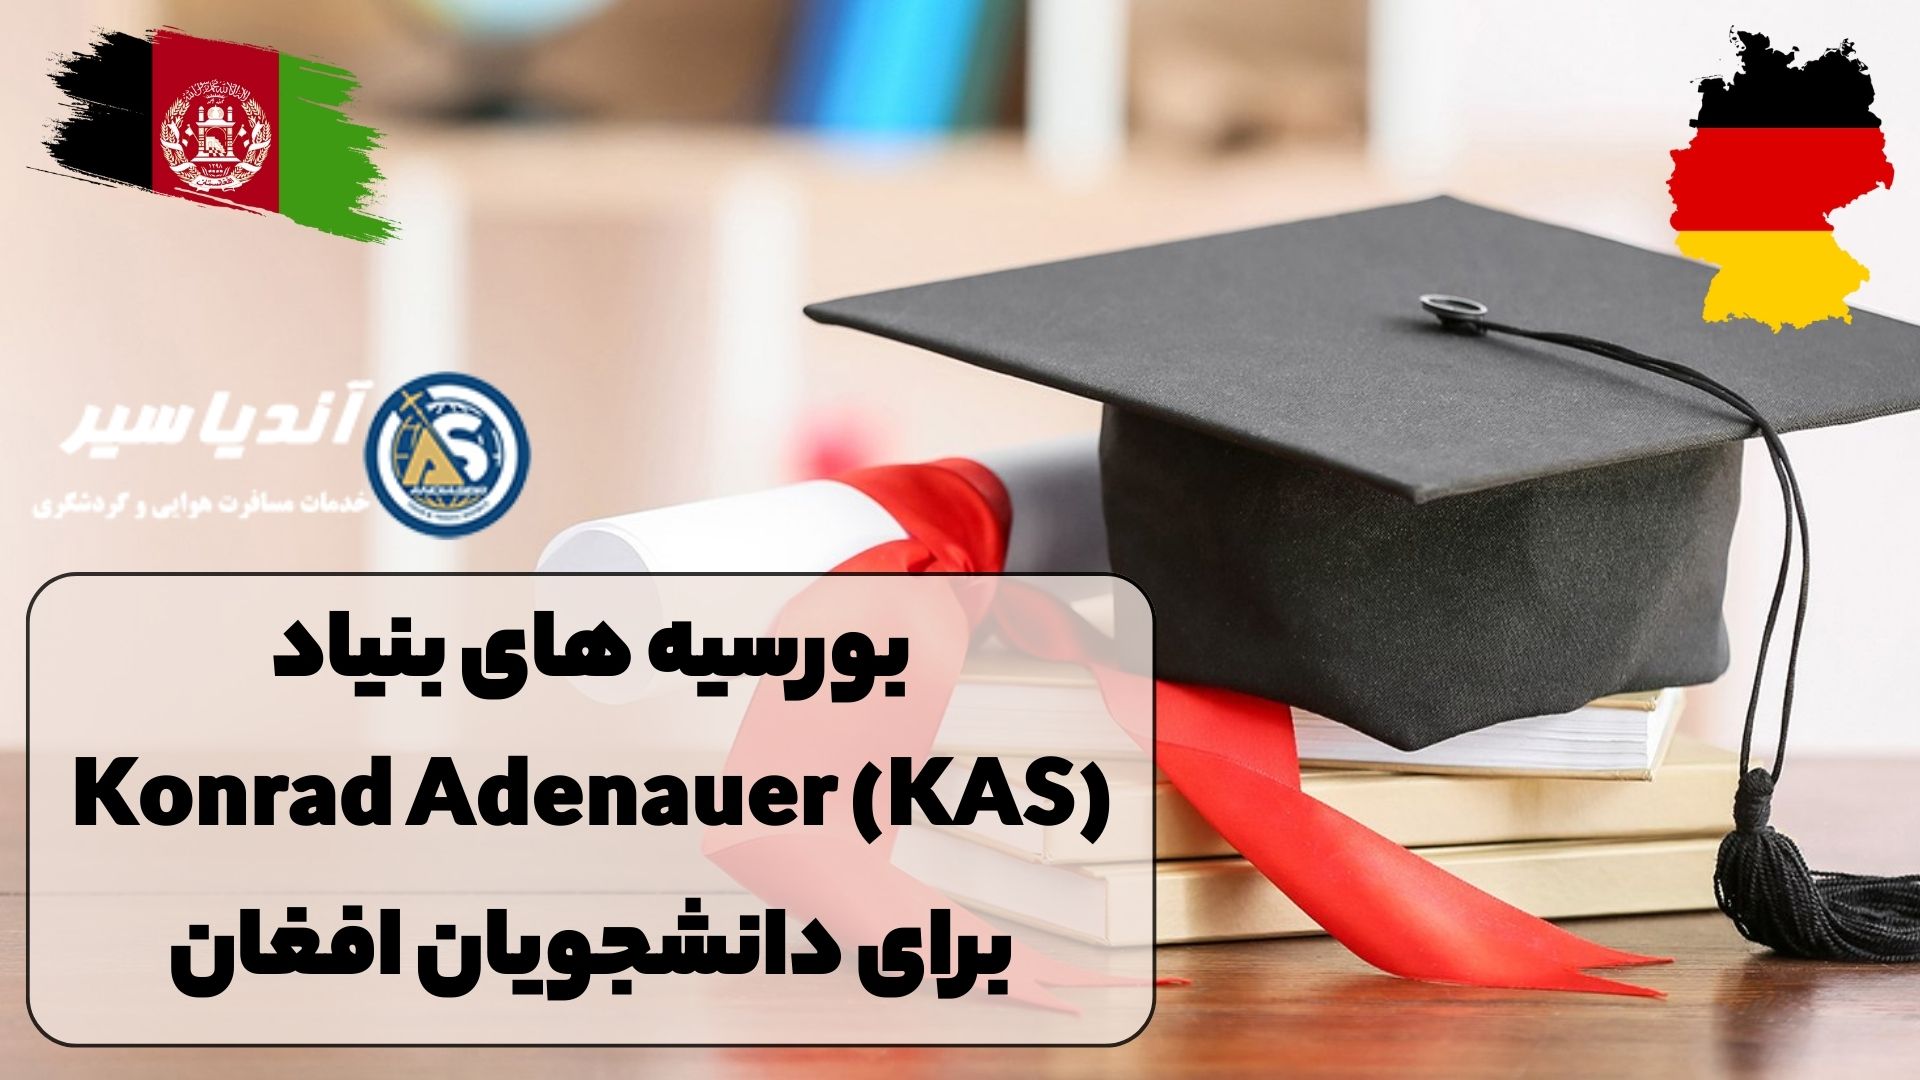 بورسیه های بنیاد Konrad Adenauer (KAS) برای دانشجویان افغان